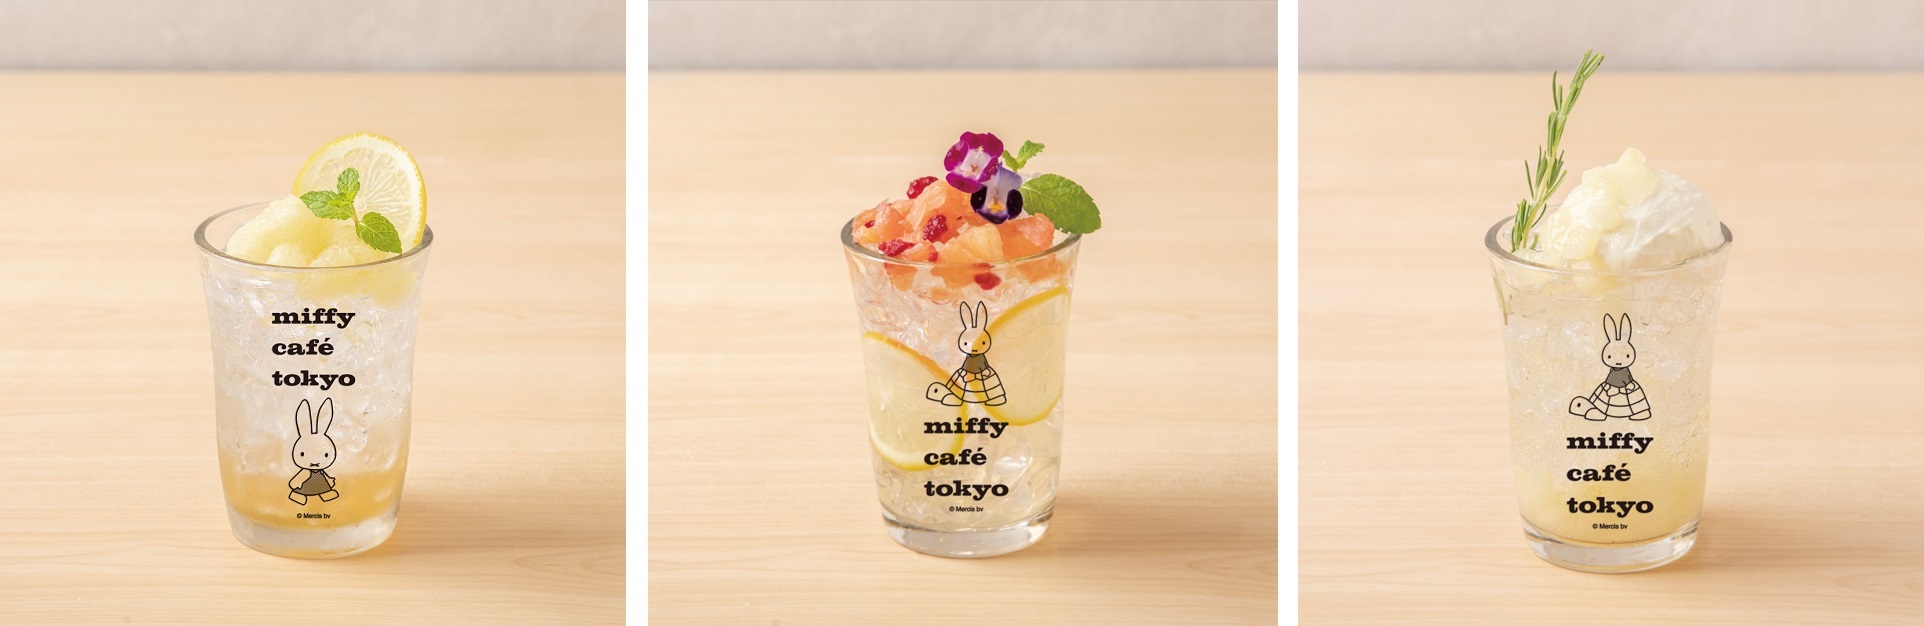 「miffy café tokyo」 オリジナルドリンク